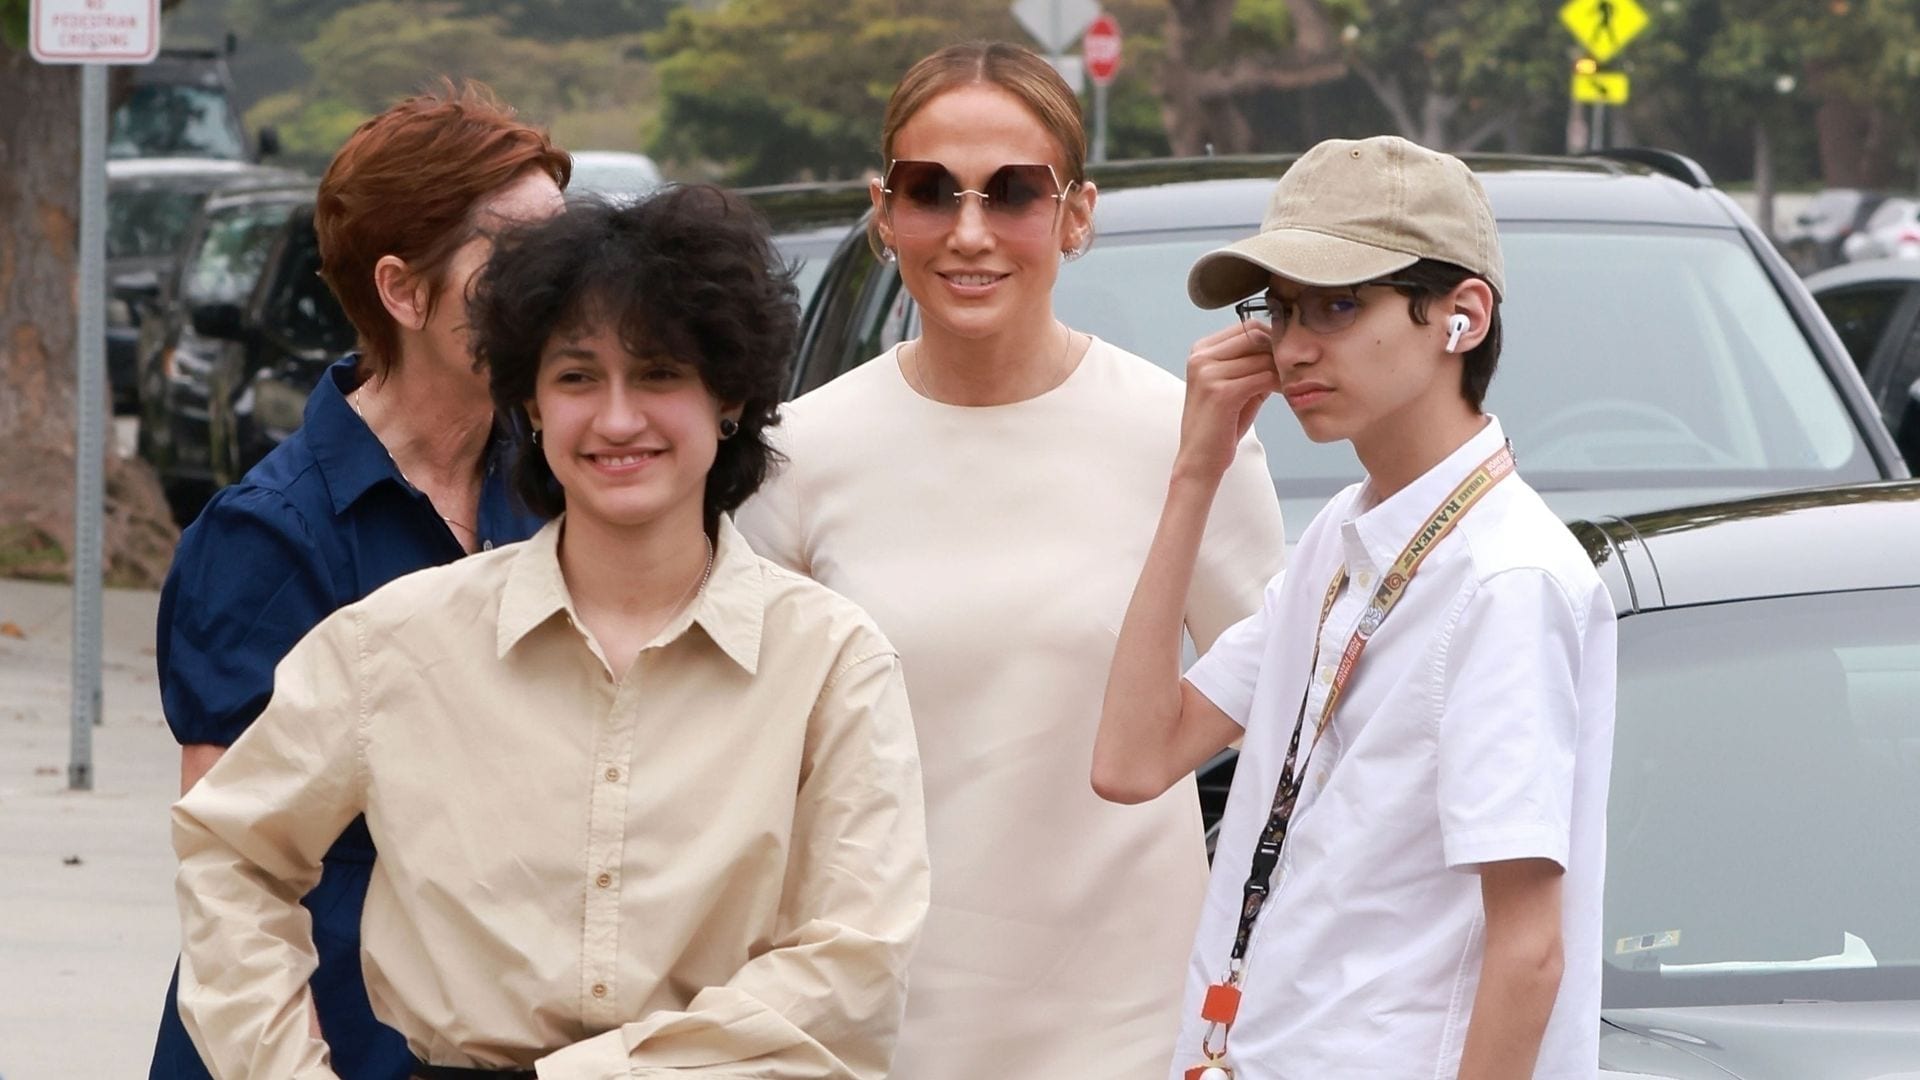 Derretida de amor por sus hijos, Jennifer Lopez les dedica una tierna publicación en redes